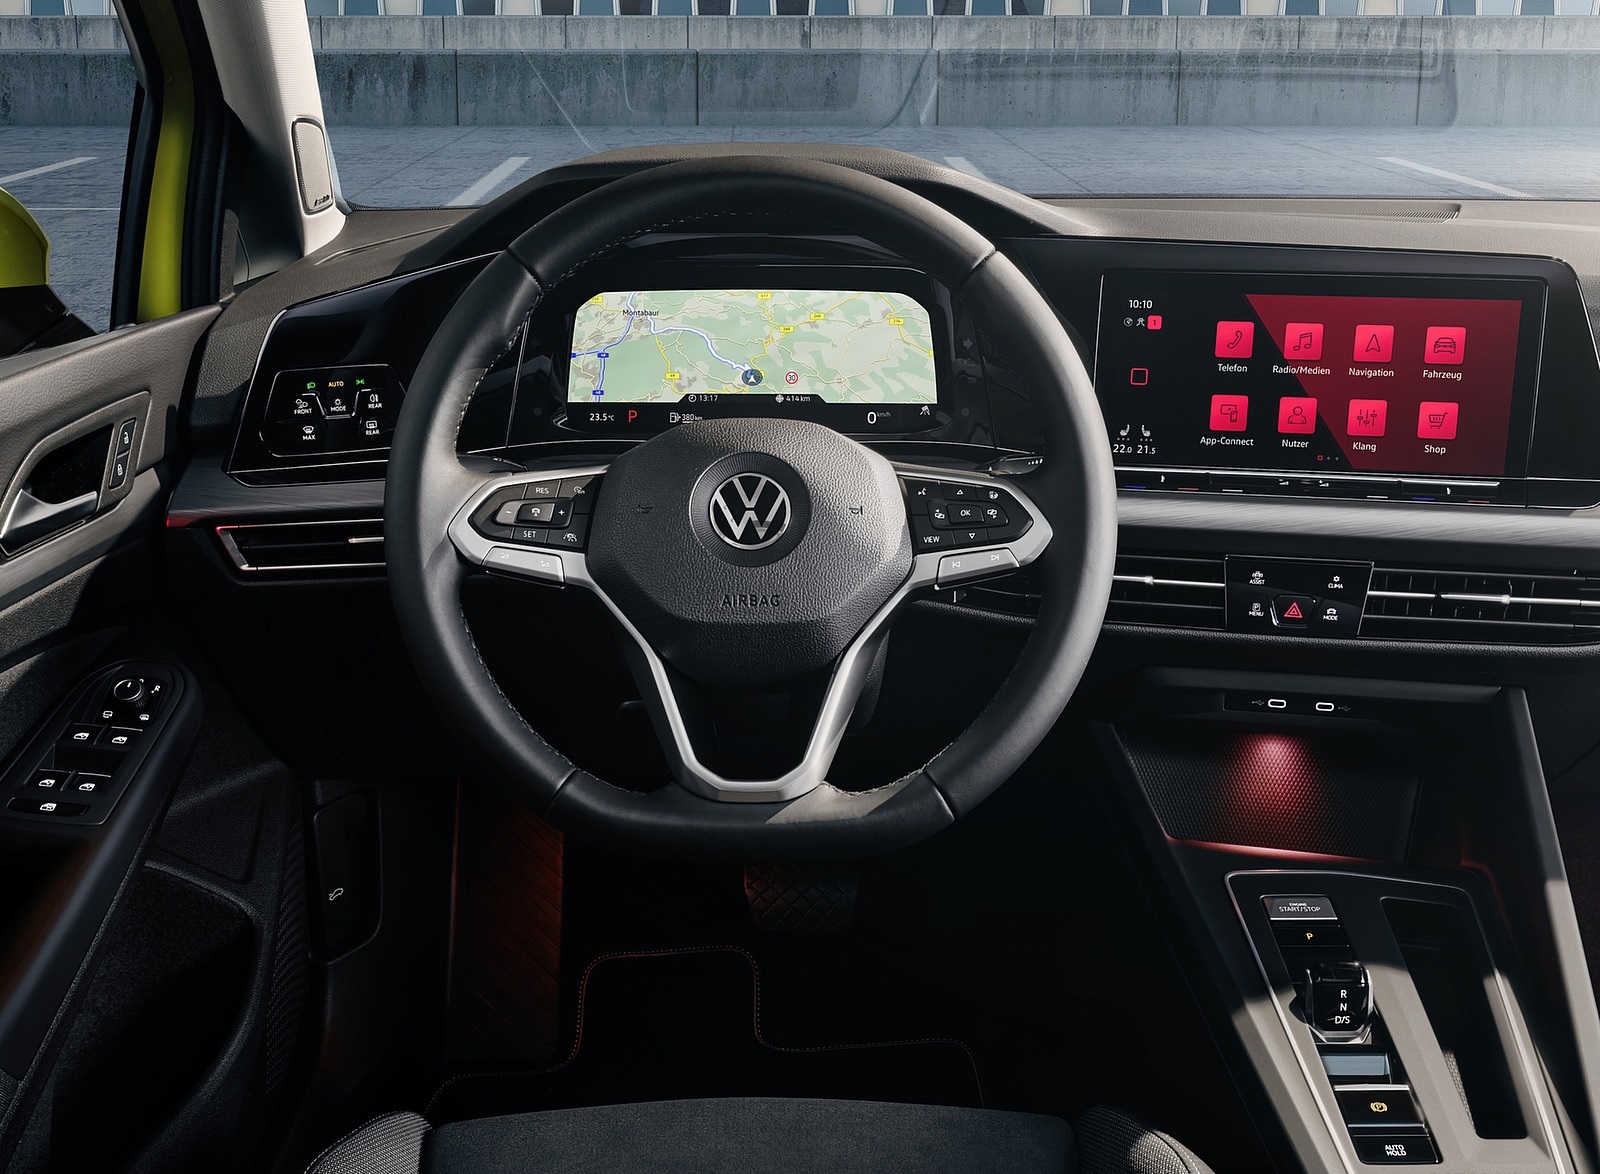 2020 Volkswagen Golf Mk8 Interior Cockpit Wallpapers #24 of 81